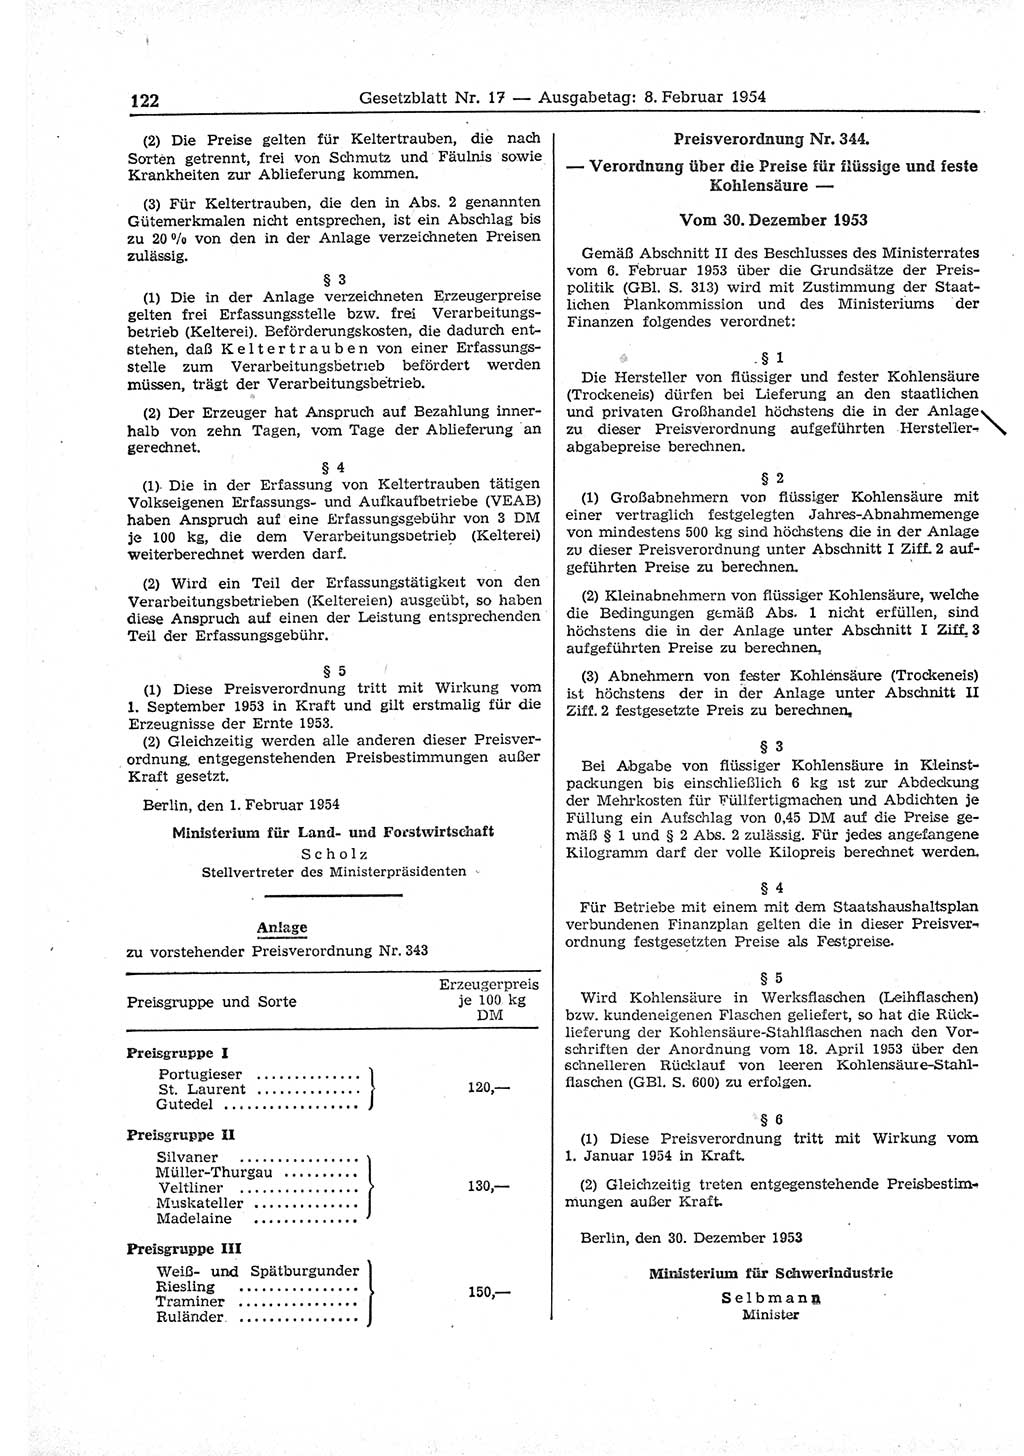 Gesetzblatt (GBl.) der Deutschen Demokratischen Republik (DDR) 1954, Seite 122 (GBl. DDR 1954, S. 122)